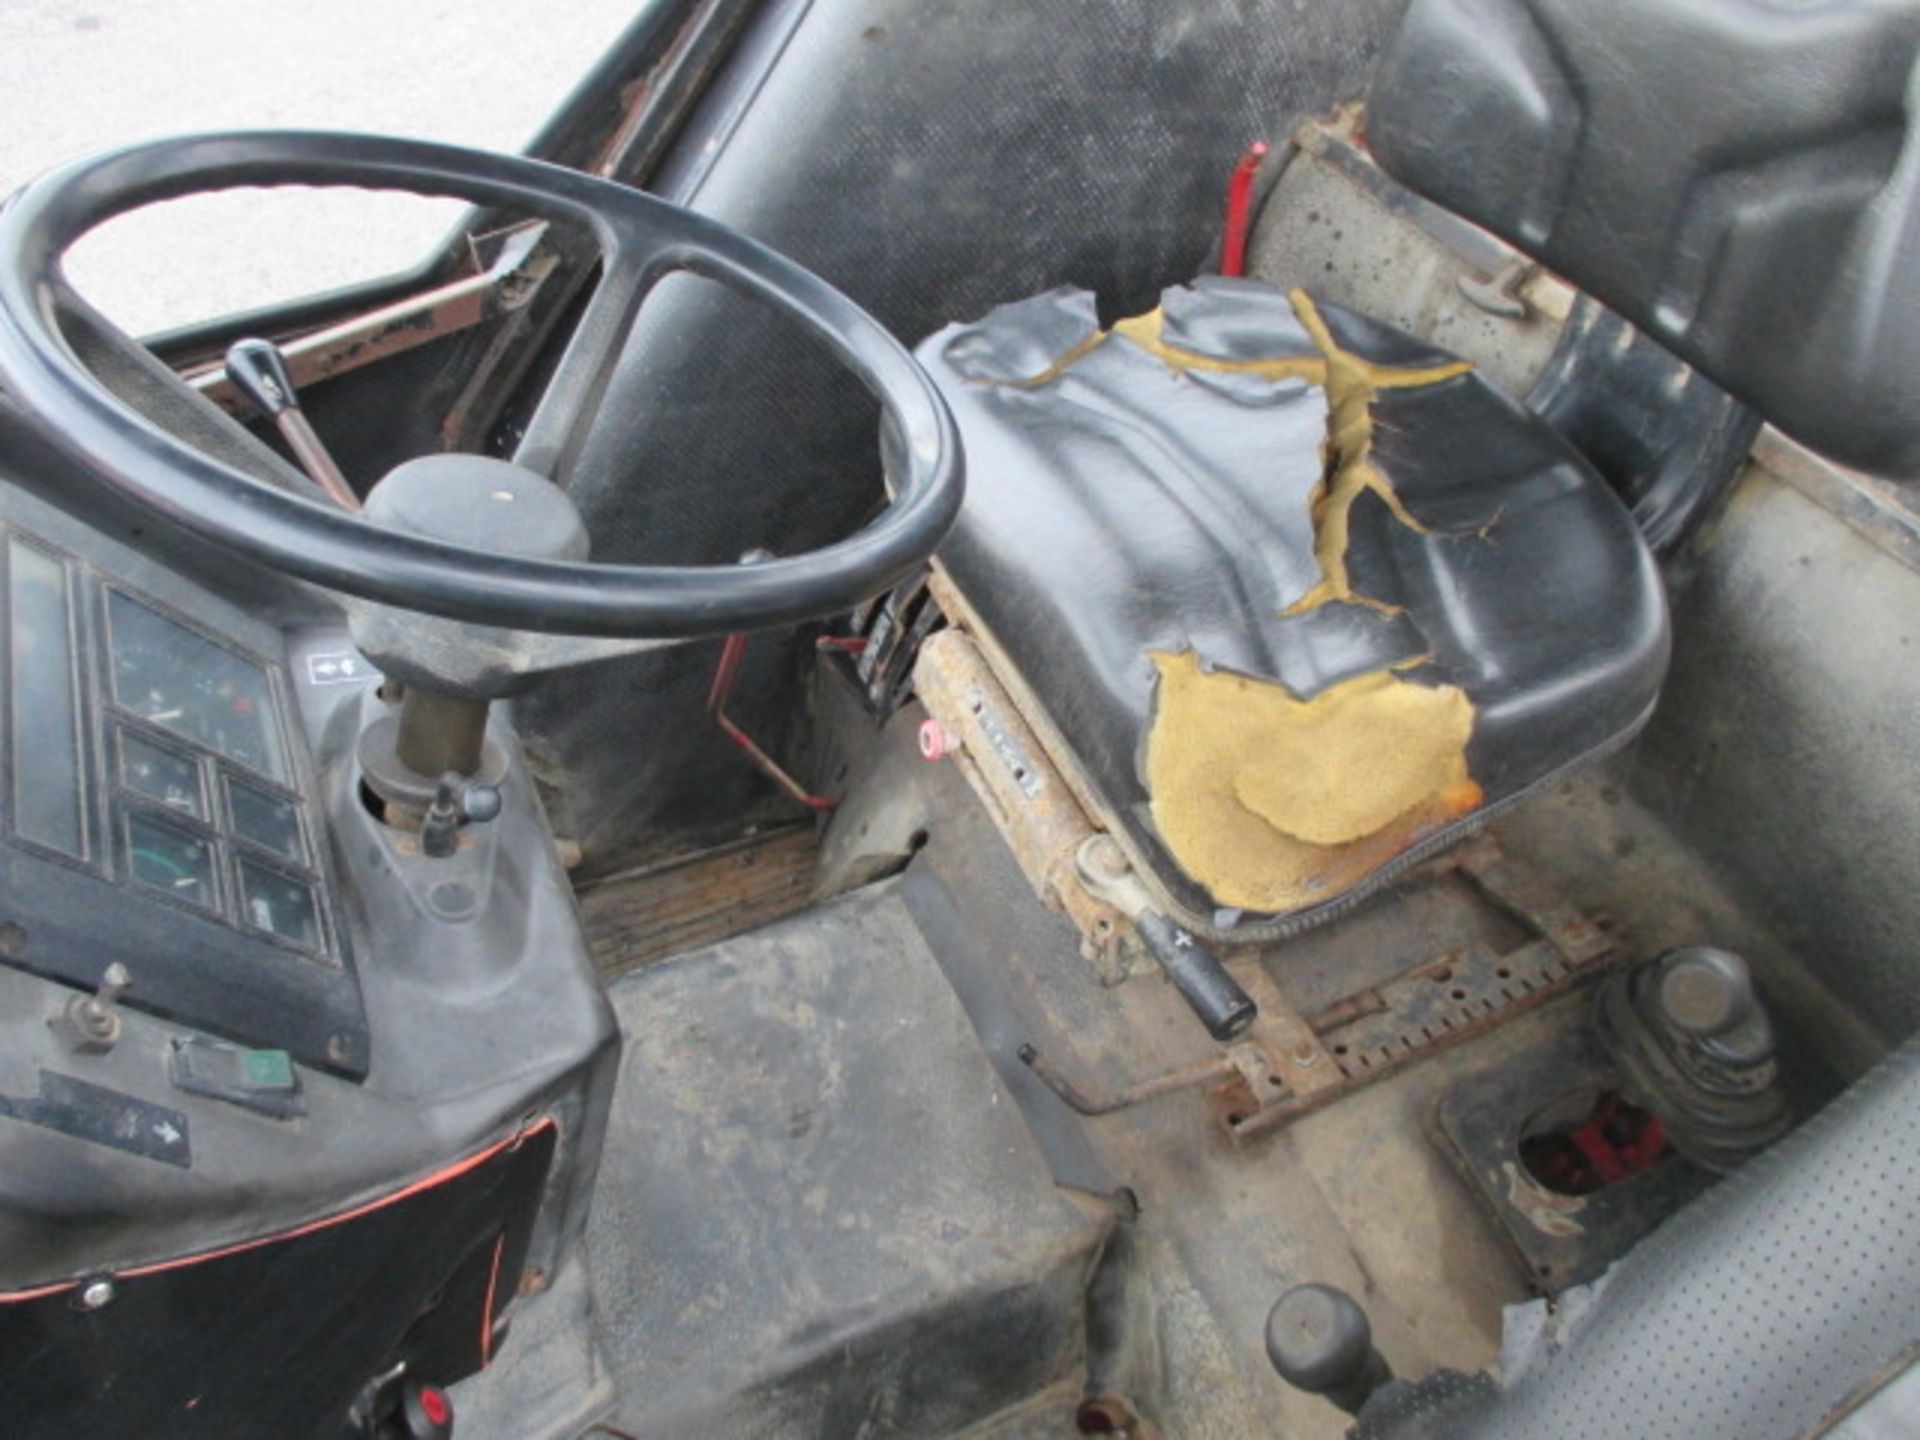 Case International 895 4wd Tractor. Tanco Power Loader & Fork. Reg. No. K263 AEC - Image 6 of 7